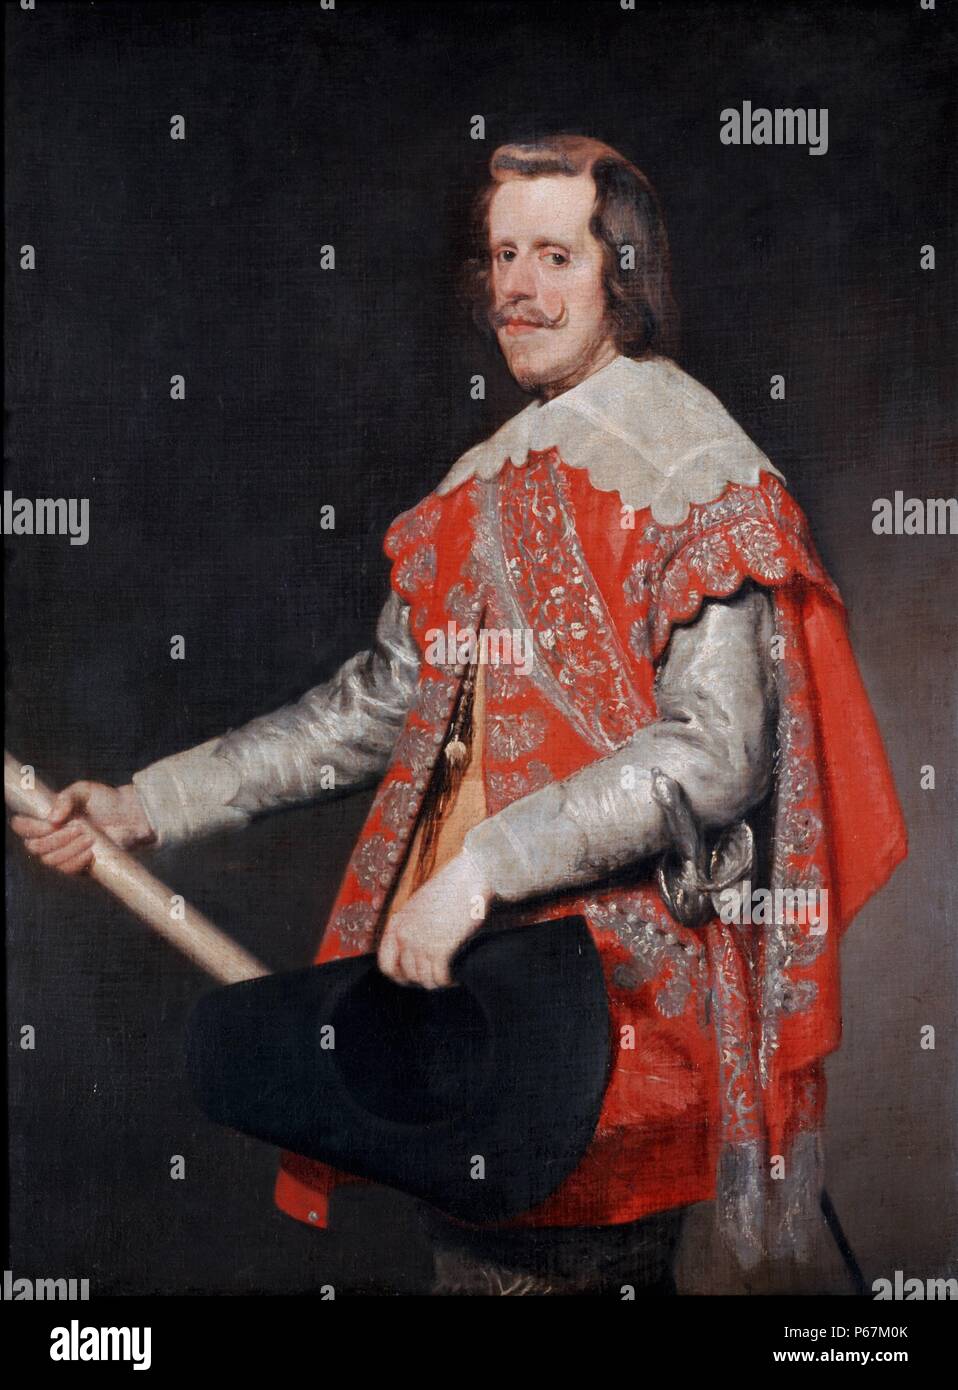 Porträt von Philipp IV., König von Spanien (1605-1665). Von Velázquez, Diego Rodríguez de Silva y (1599-1660), spanischer Maler, war der führende Künstler, der in den Hof von König Philip IV und einer der wichtigsten Maler des Spanischen Goldenen Zeitalters gemalt. Vom 17. Jahrhundert Stockfoto